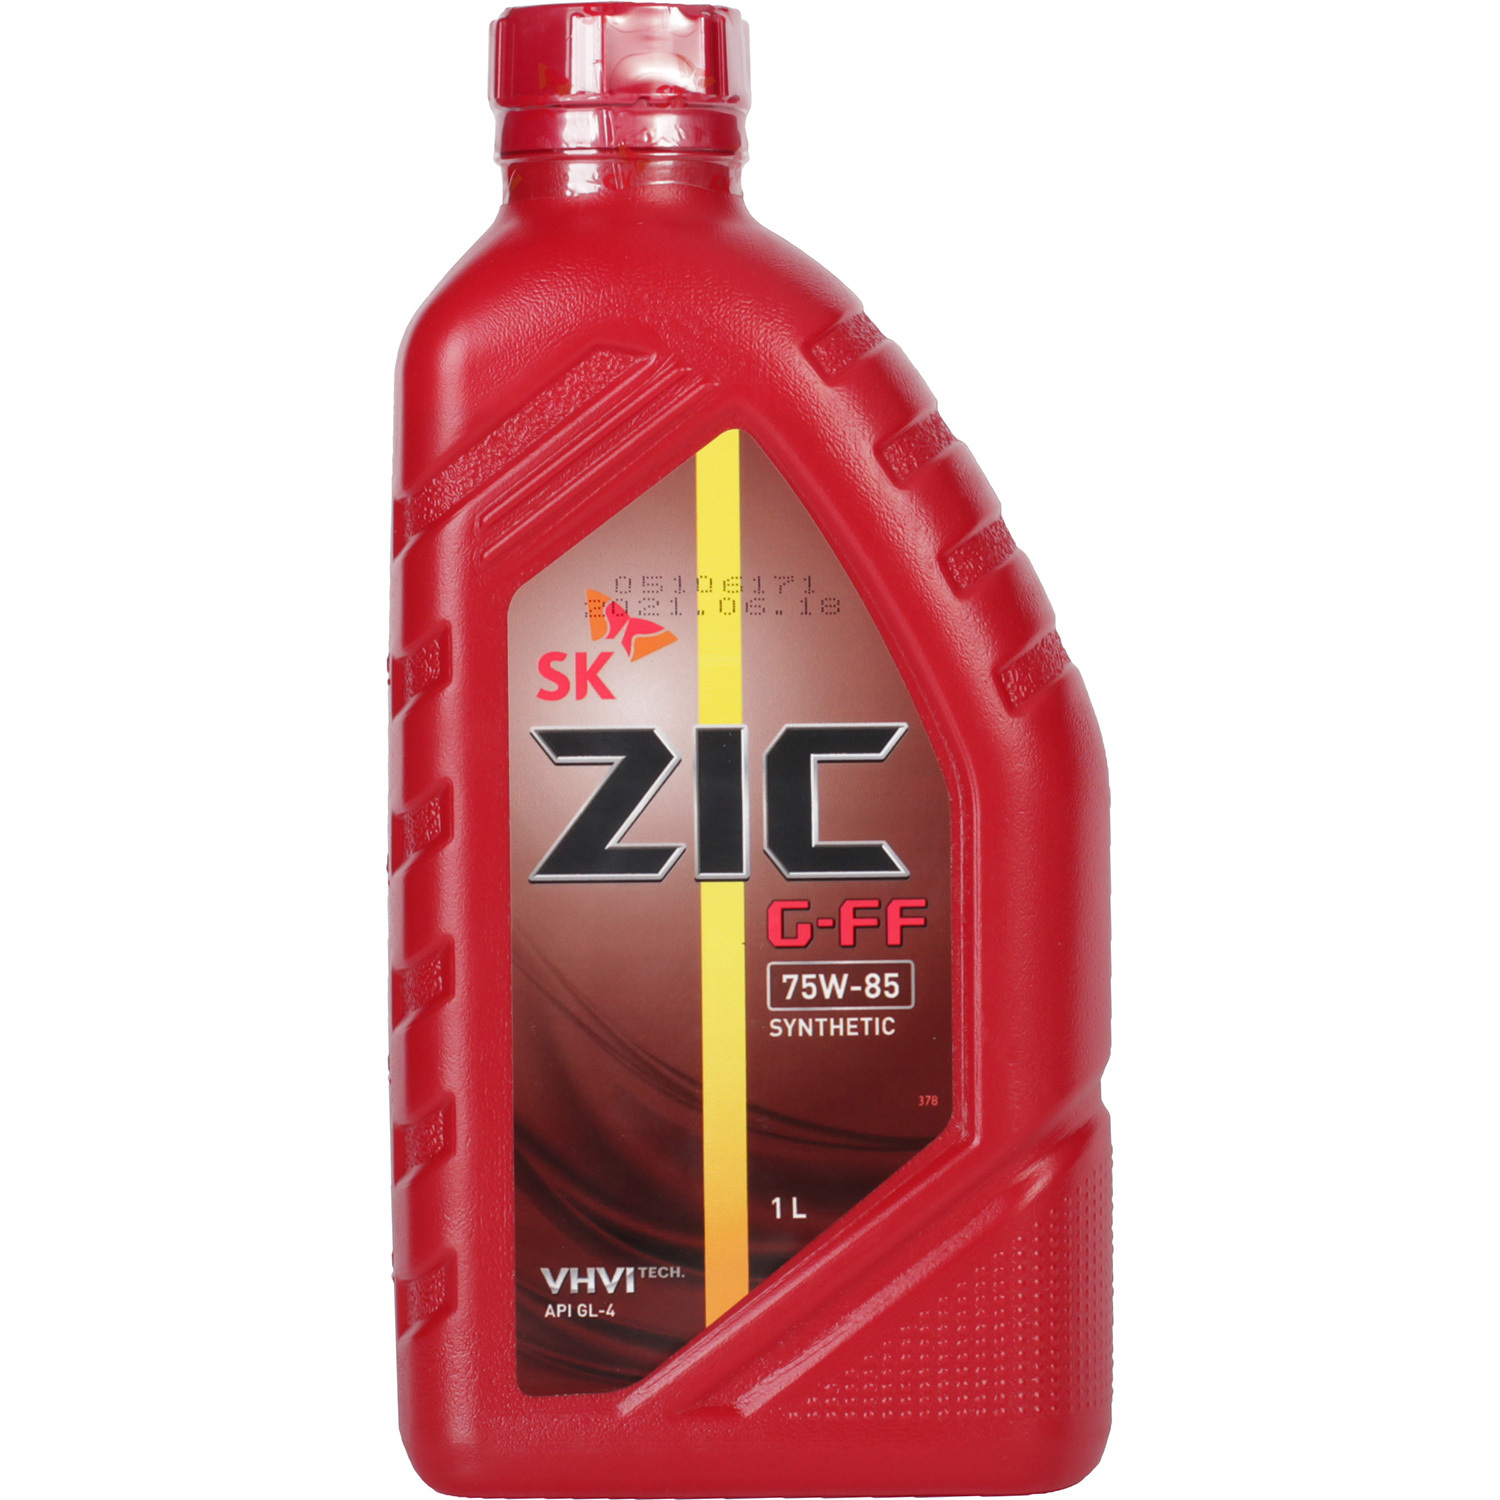 ZIC Трансмиссионное масло ZIC G-FF 75W-85, 1 л трансмиссионное масло eni agip rotra fe 75w 80 20 л